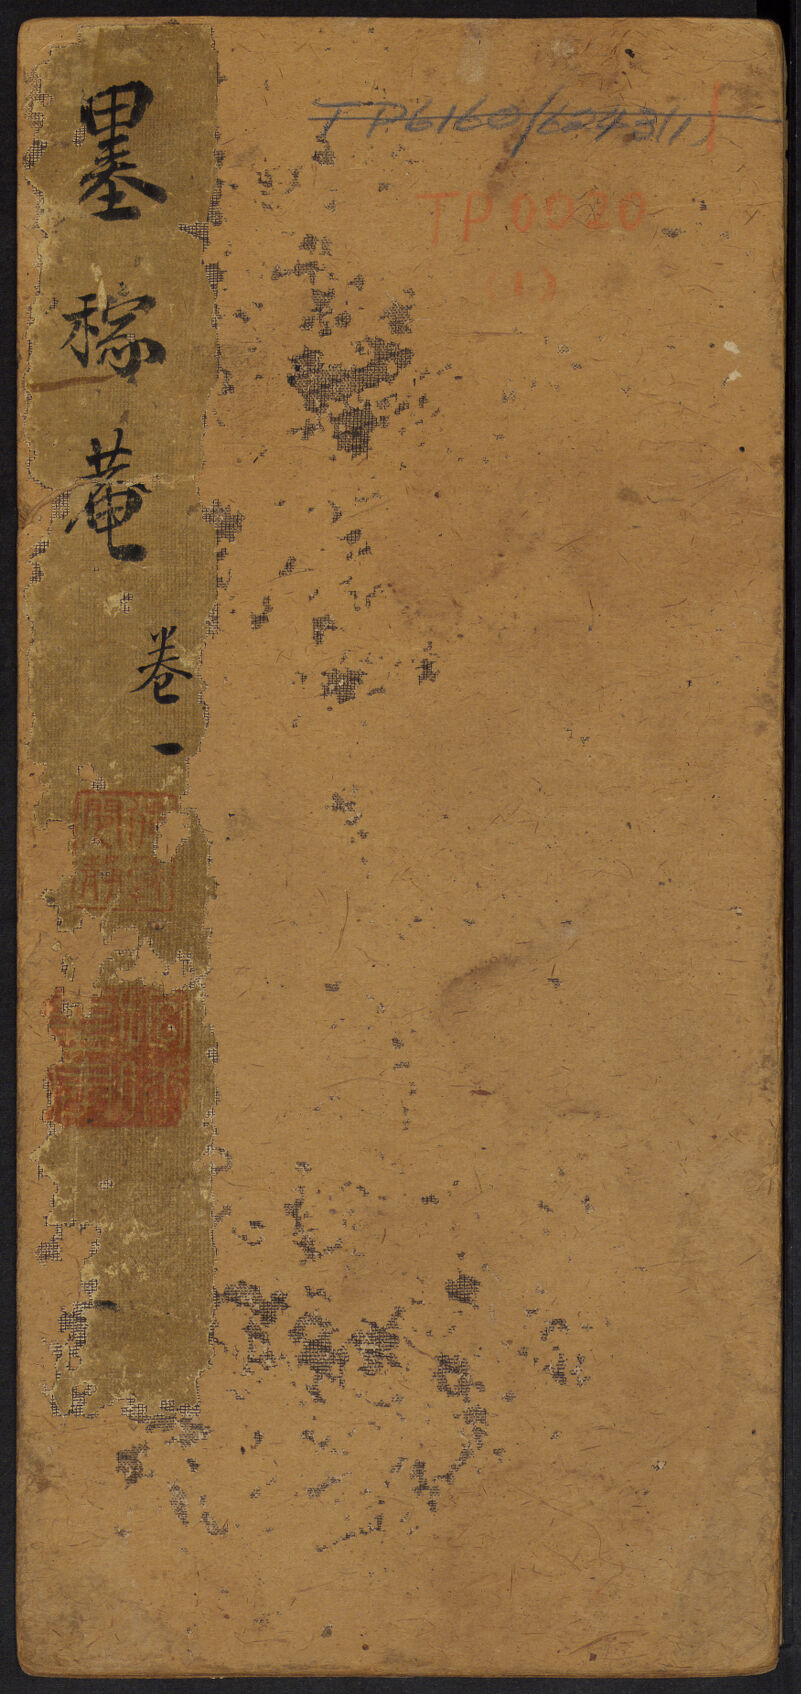 Chinese Calligraphy — Harvard University Press